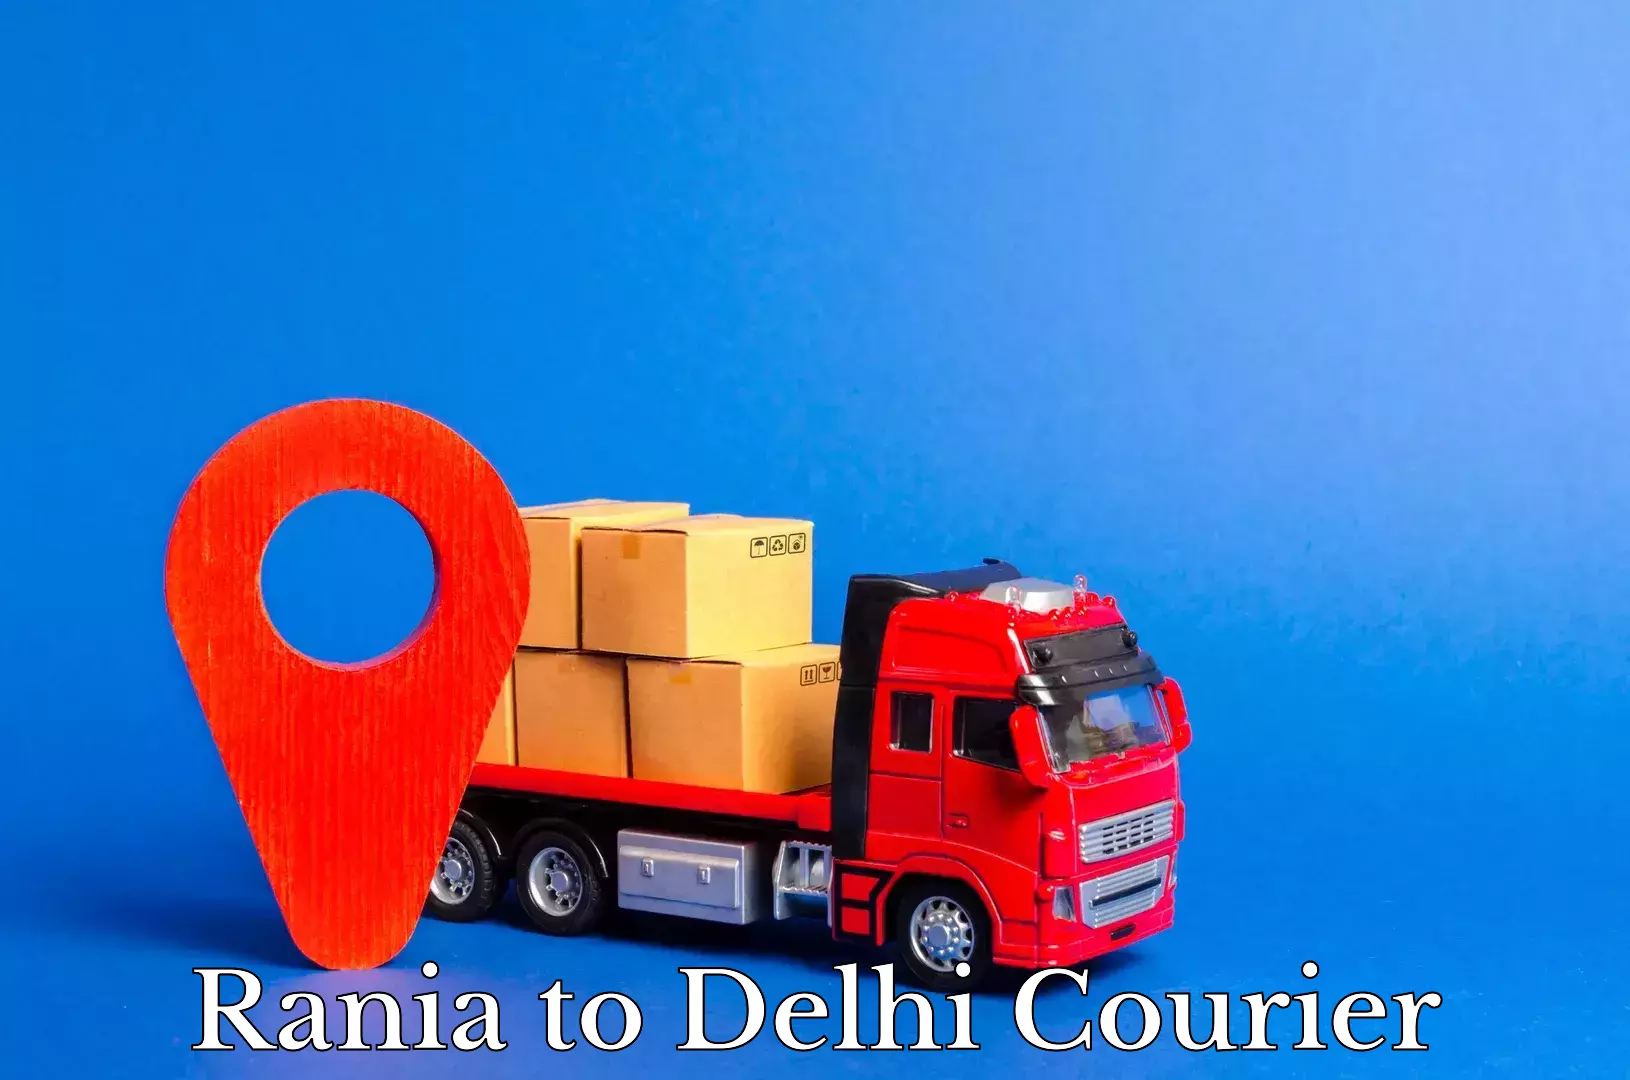 Local delivery service Rania to Delhi